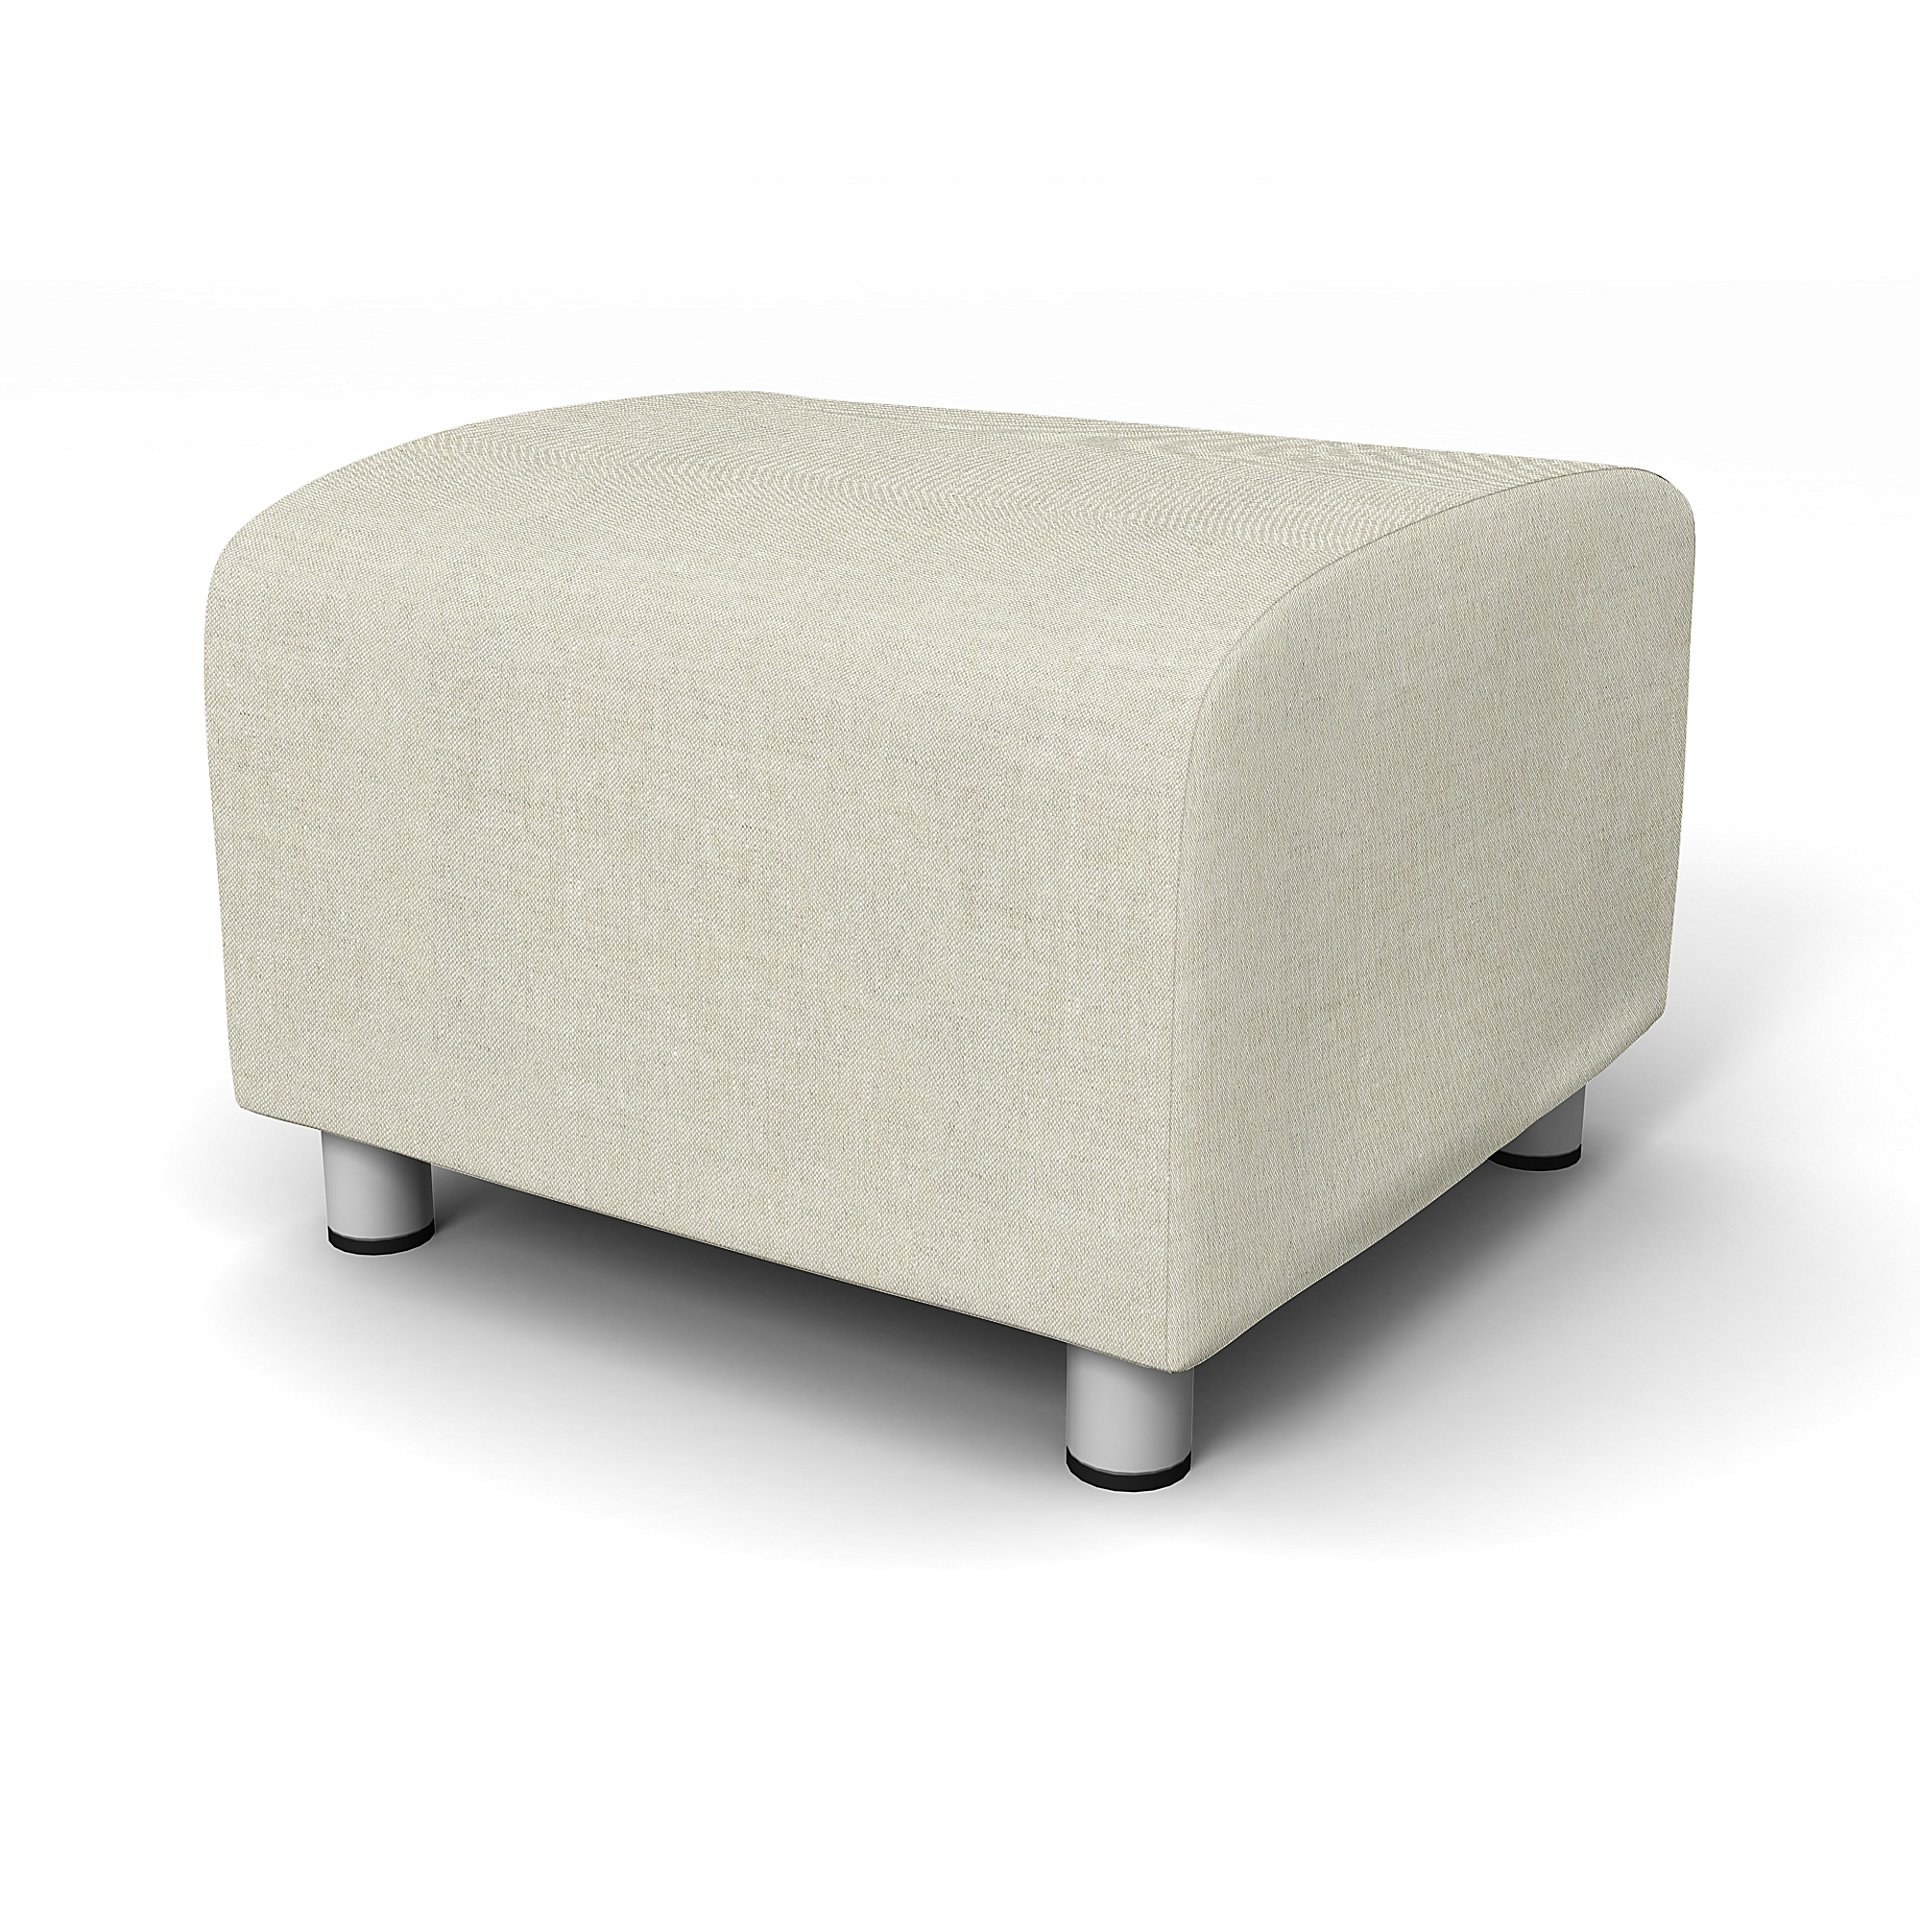 IKEA - Klippan Footstool Cover, Natural, Linen - Bemz